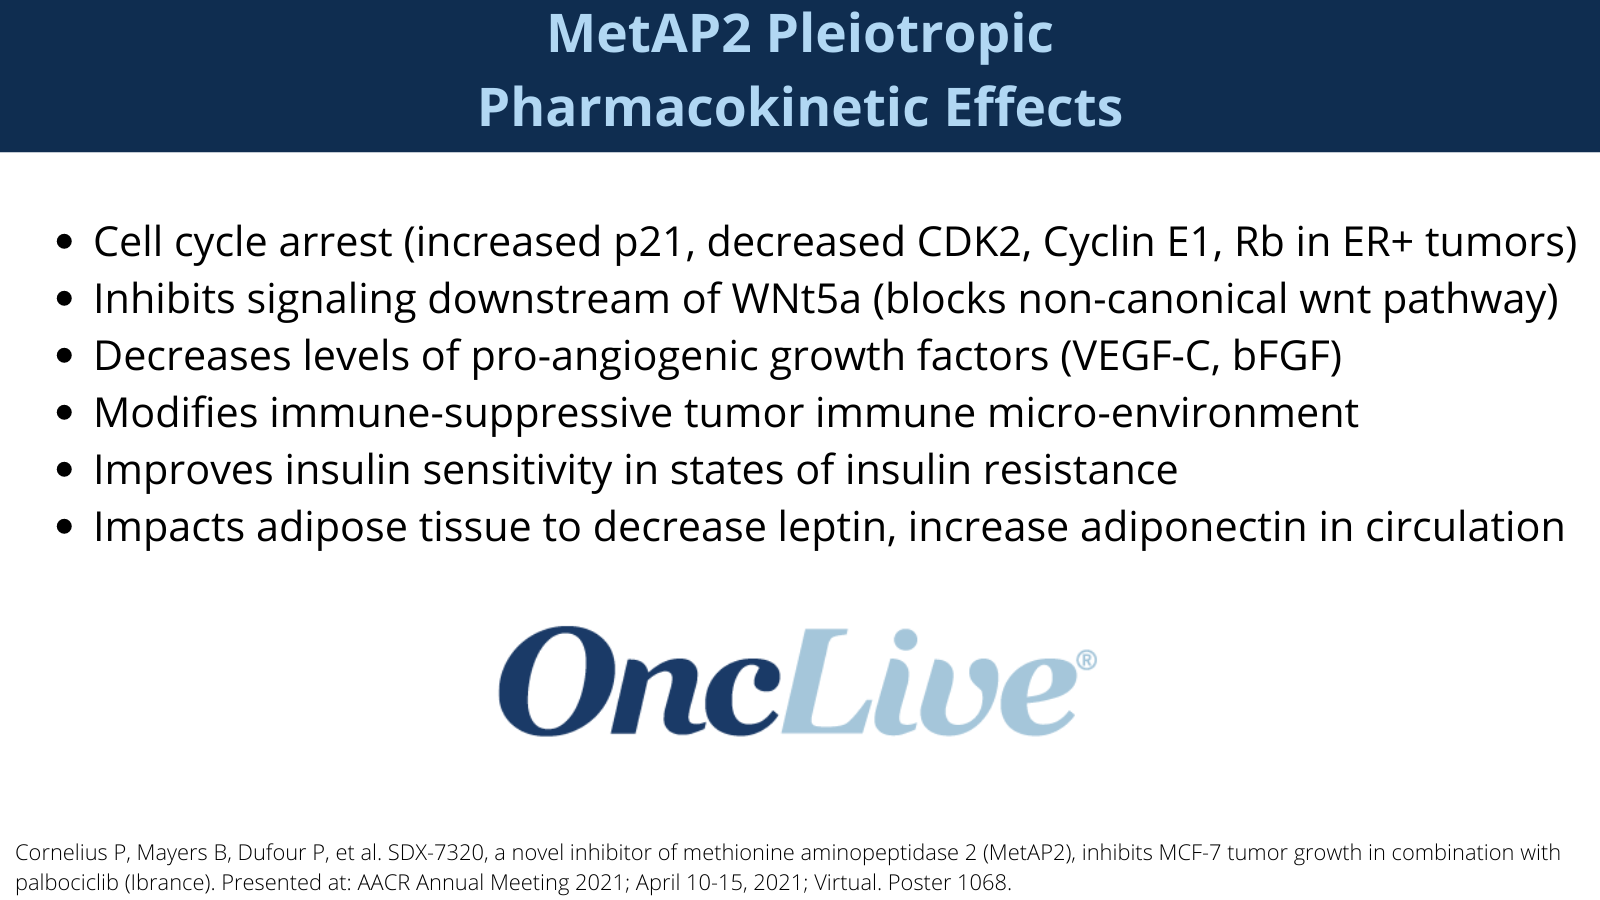 MetAP2 Pleiotropic Pharmacokinetic Effects